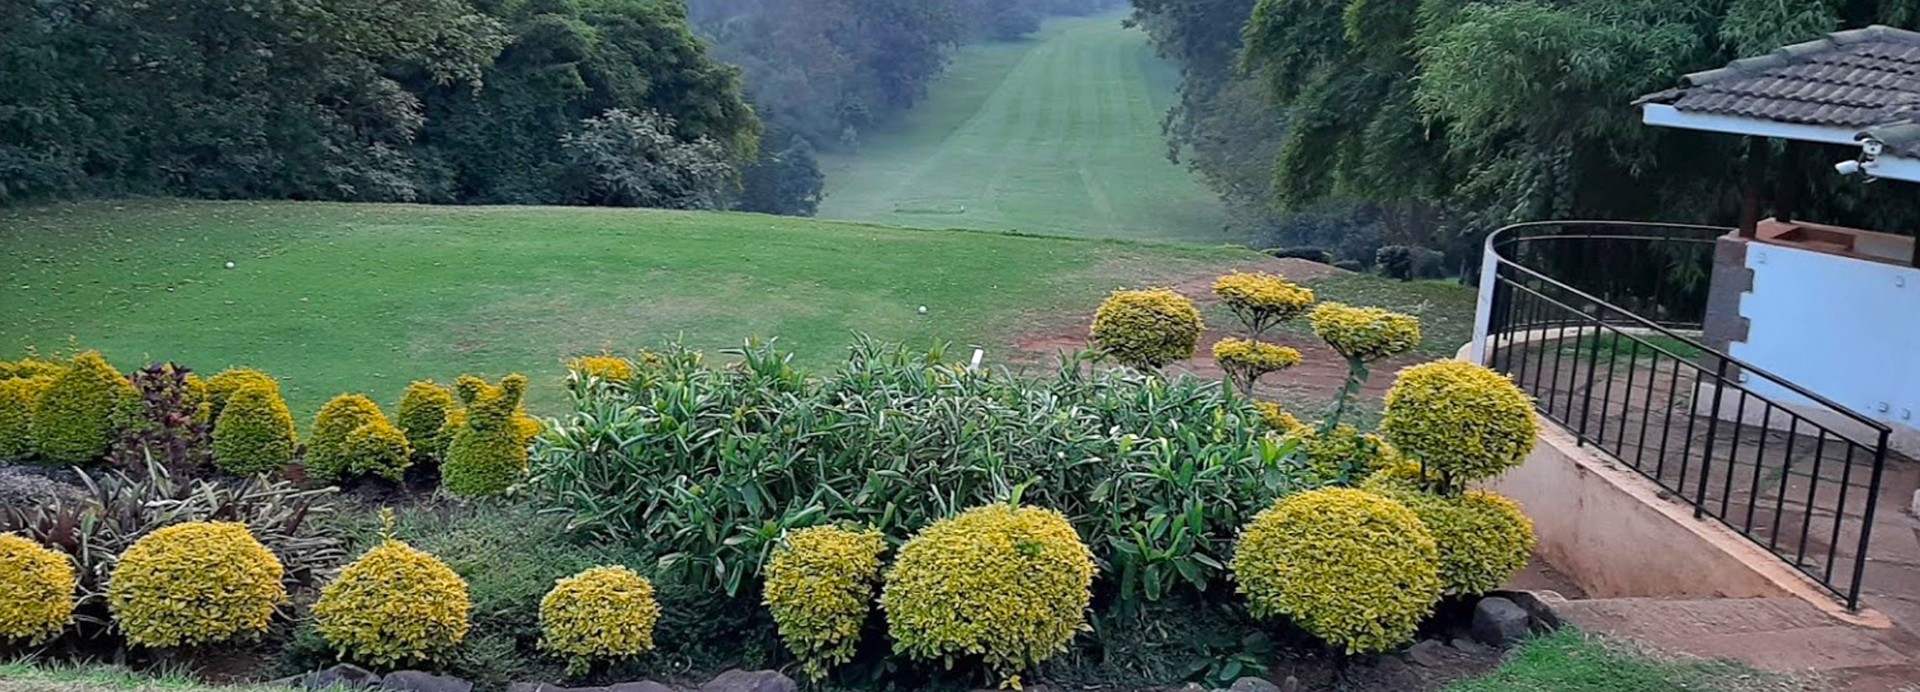 Sigona Golf Club  | Golfové zájezdy, golfová dovolená, luxusní golf